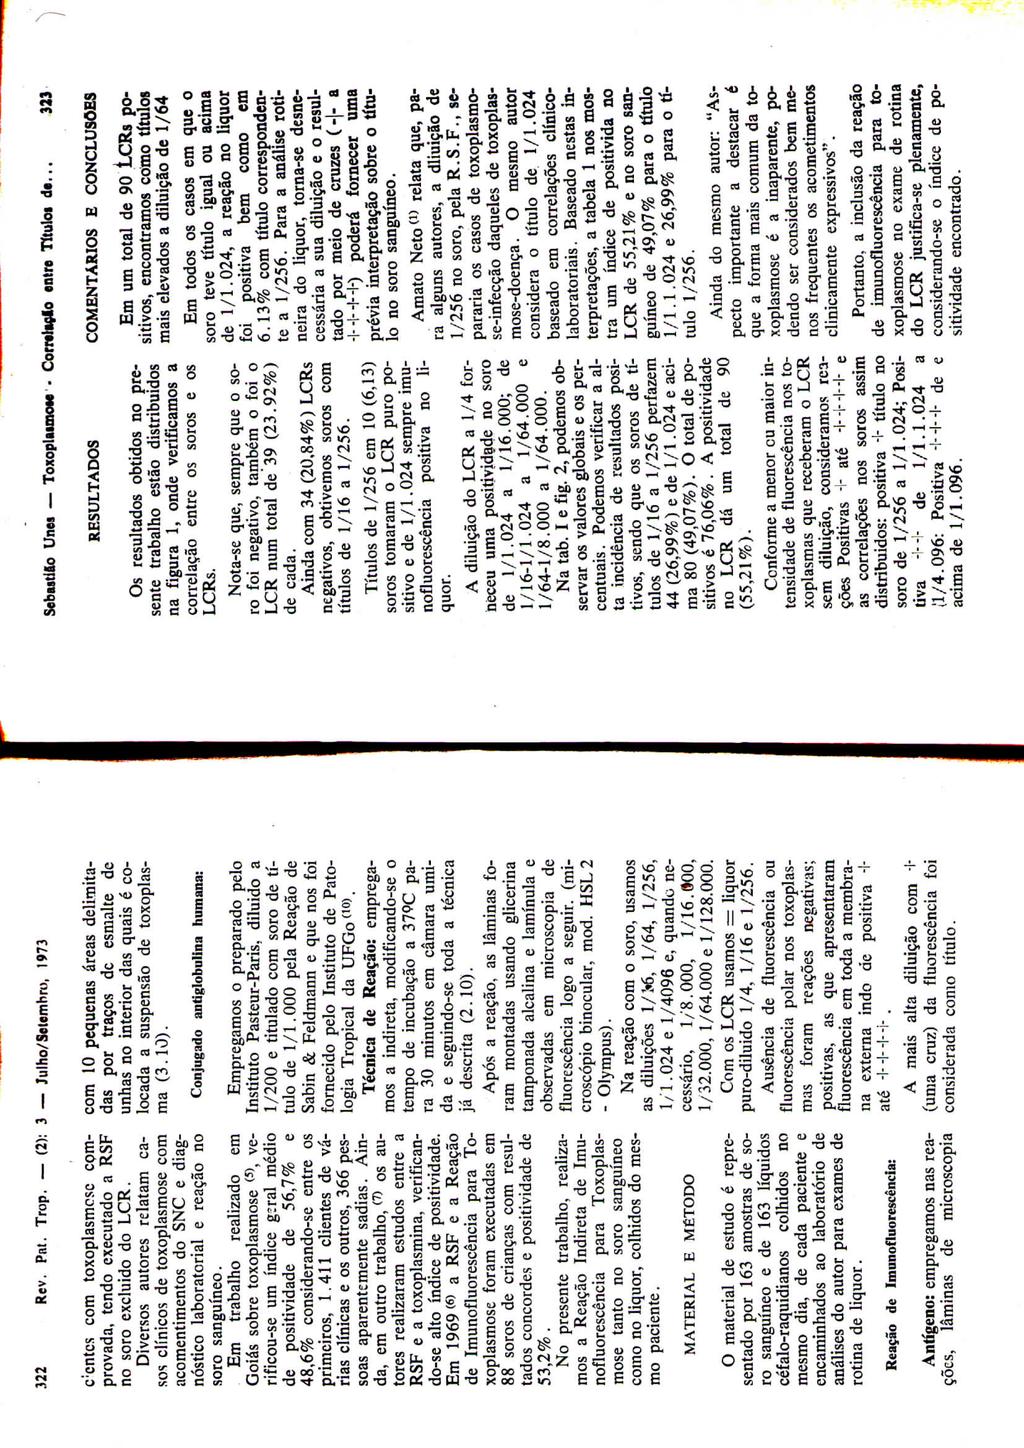 322 Rev. Pat. Trop. (2); 3 Julho/Selembro, 1973 Sebutllo Unes ToxoplaunoM - Corrdiçio entre Títulos de... 323 c:cntcs com toxoplasmcsc comprovada, tendo executado a RSF no soro excluído do LCR.